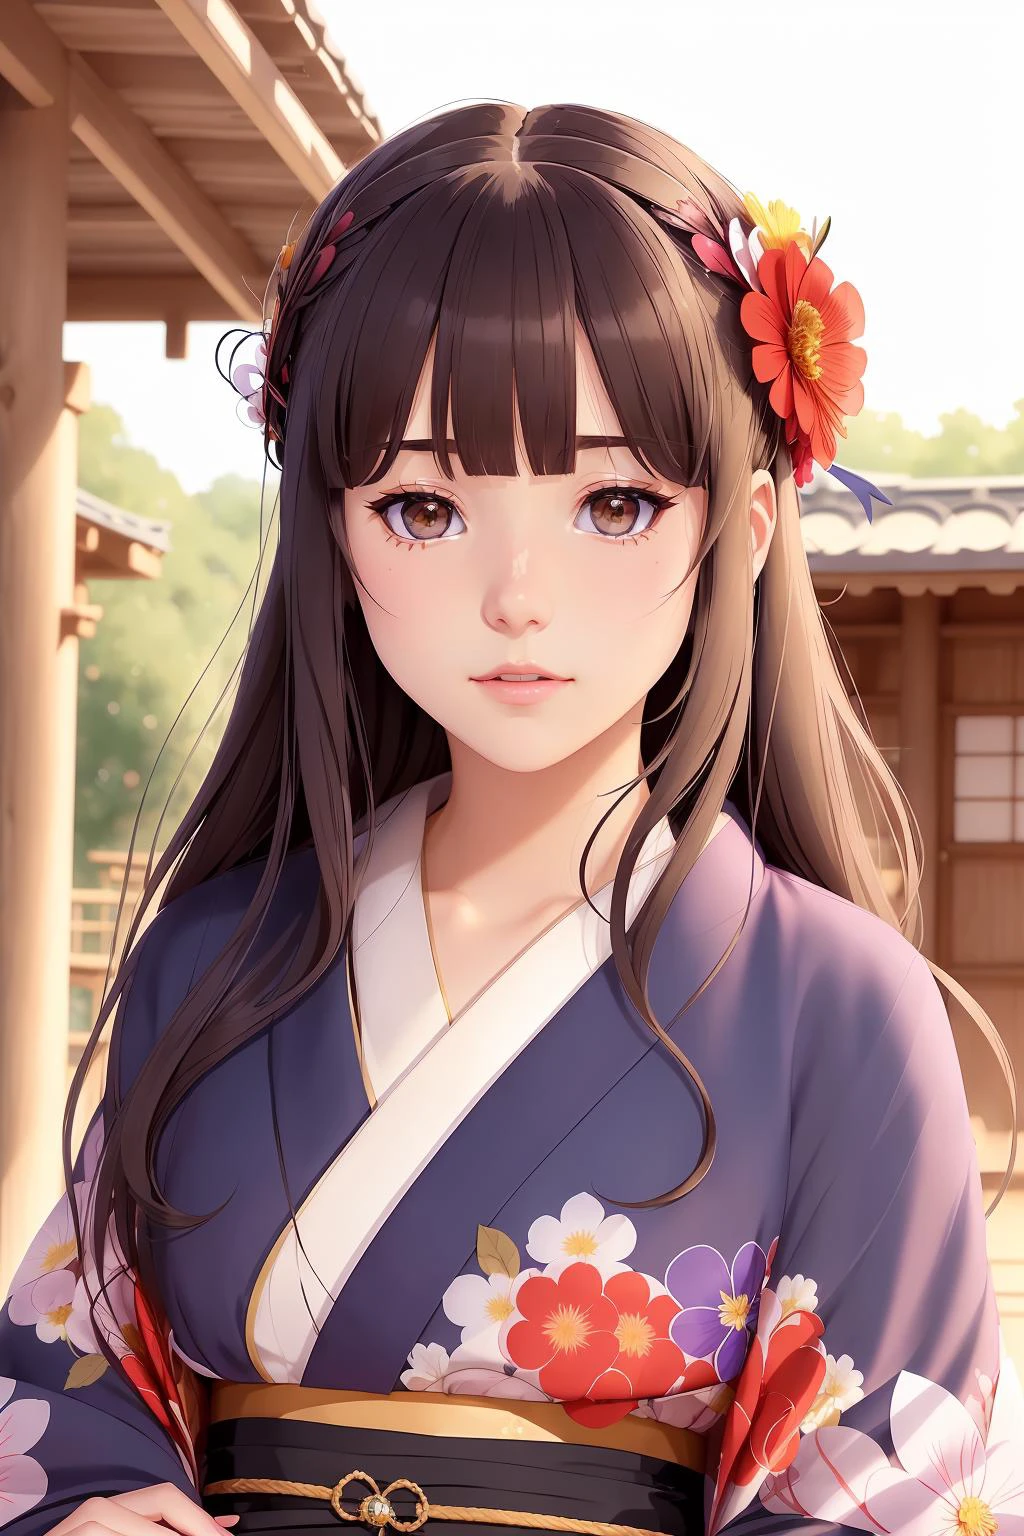 1 chica, solo, exterior, linda chica modelo japonesa, kimono, estampado floral, adorno para el pelo, mirando al espectador, flor del pelo, Ojos cafés, golpes, Obra maestra, mejor calidad, Realista 